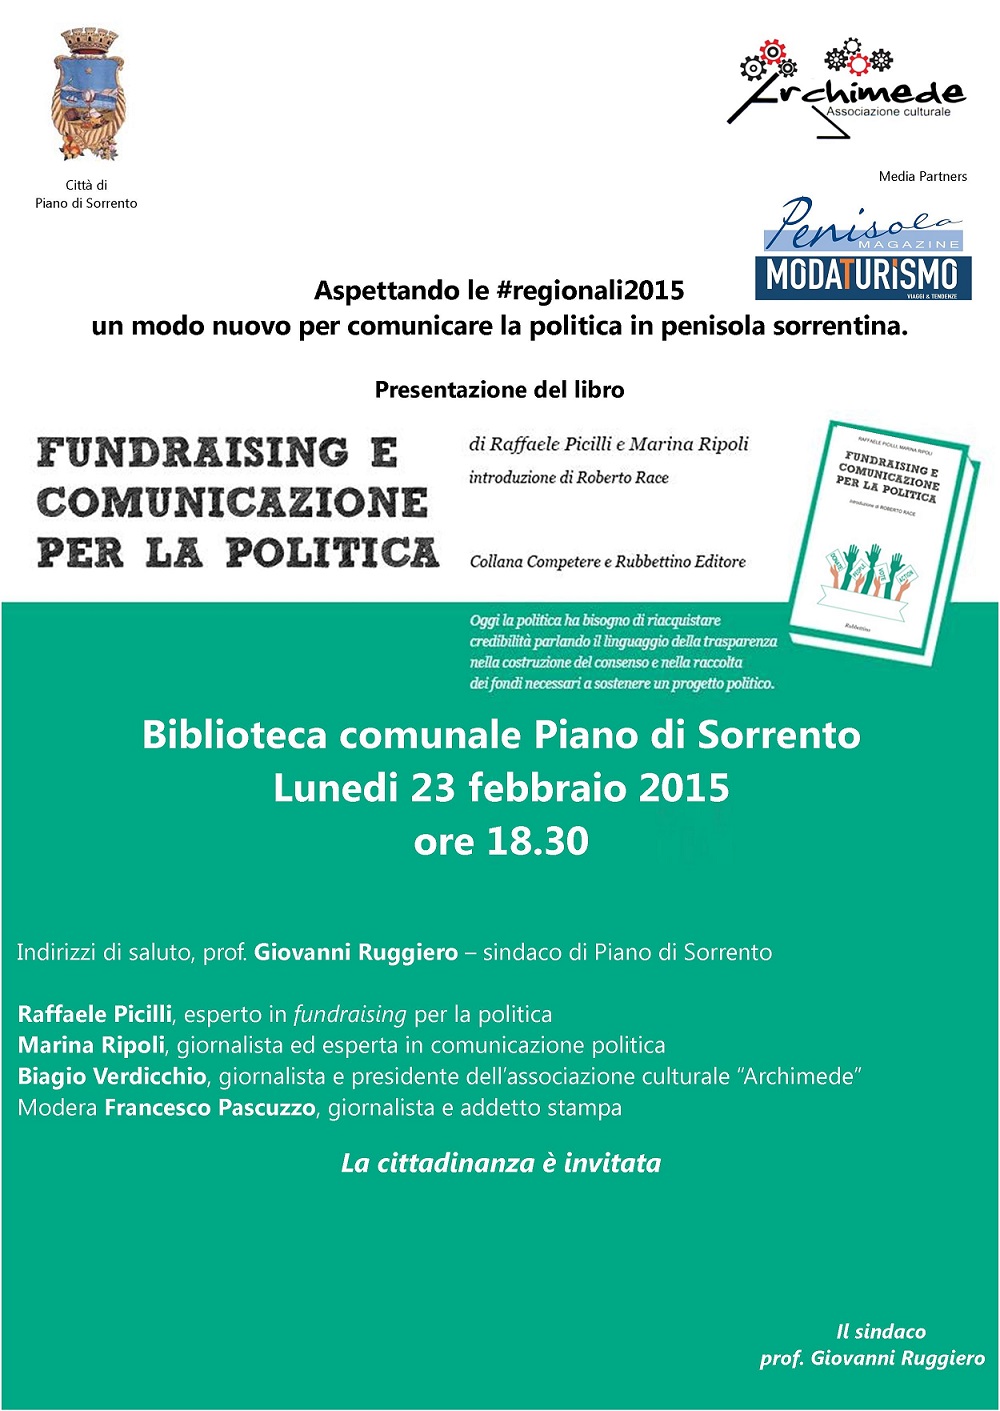  Presentazione del libro “Fundraising e comunicazione per la politica” a Piano di Sorrento